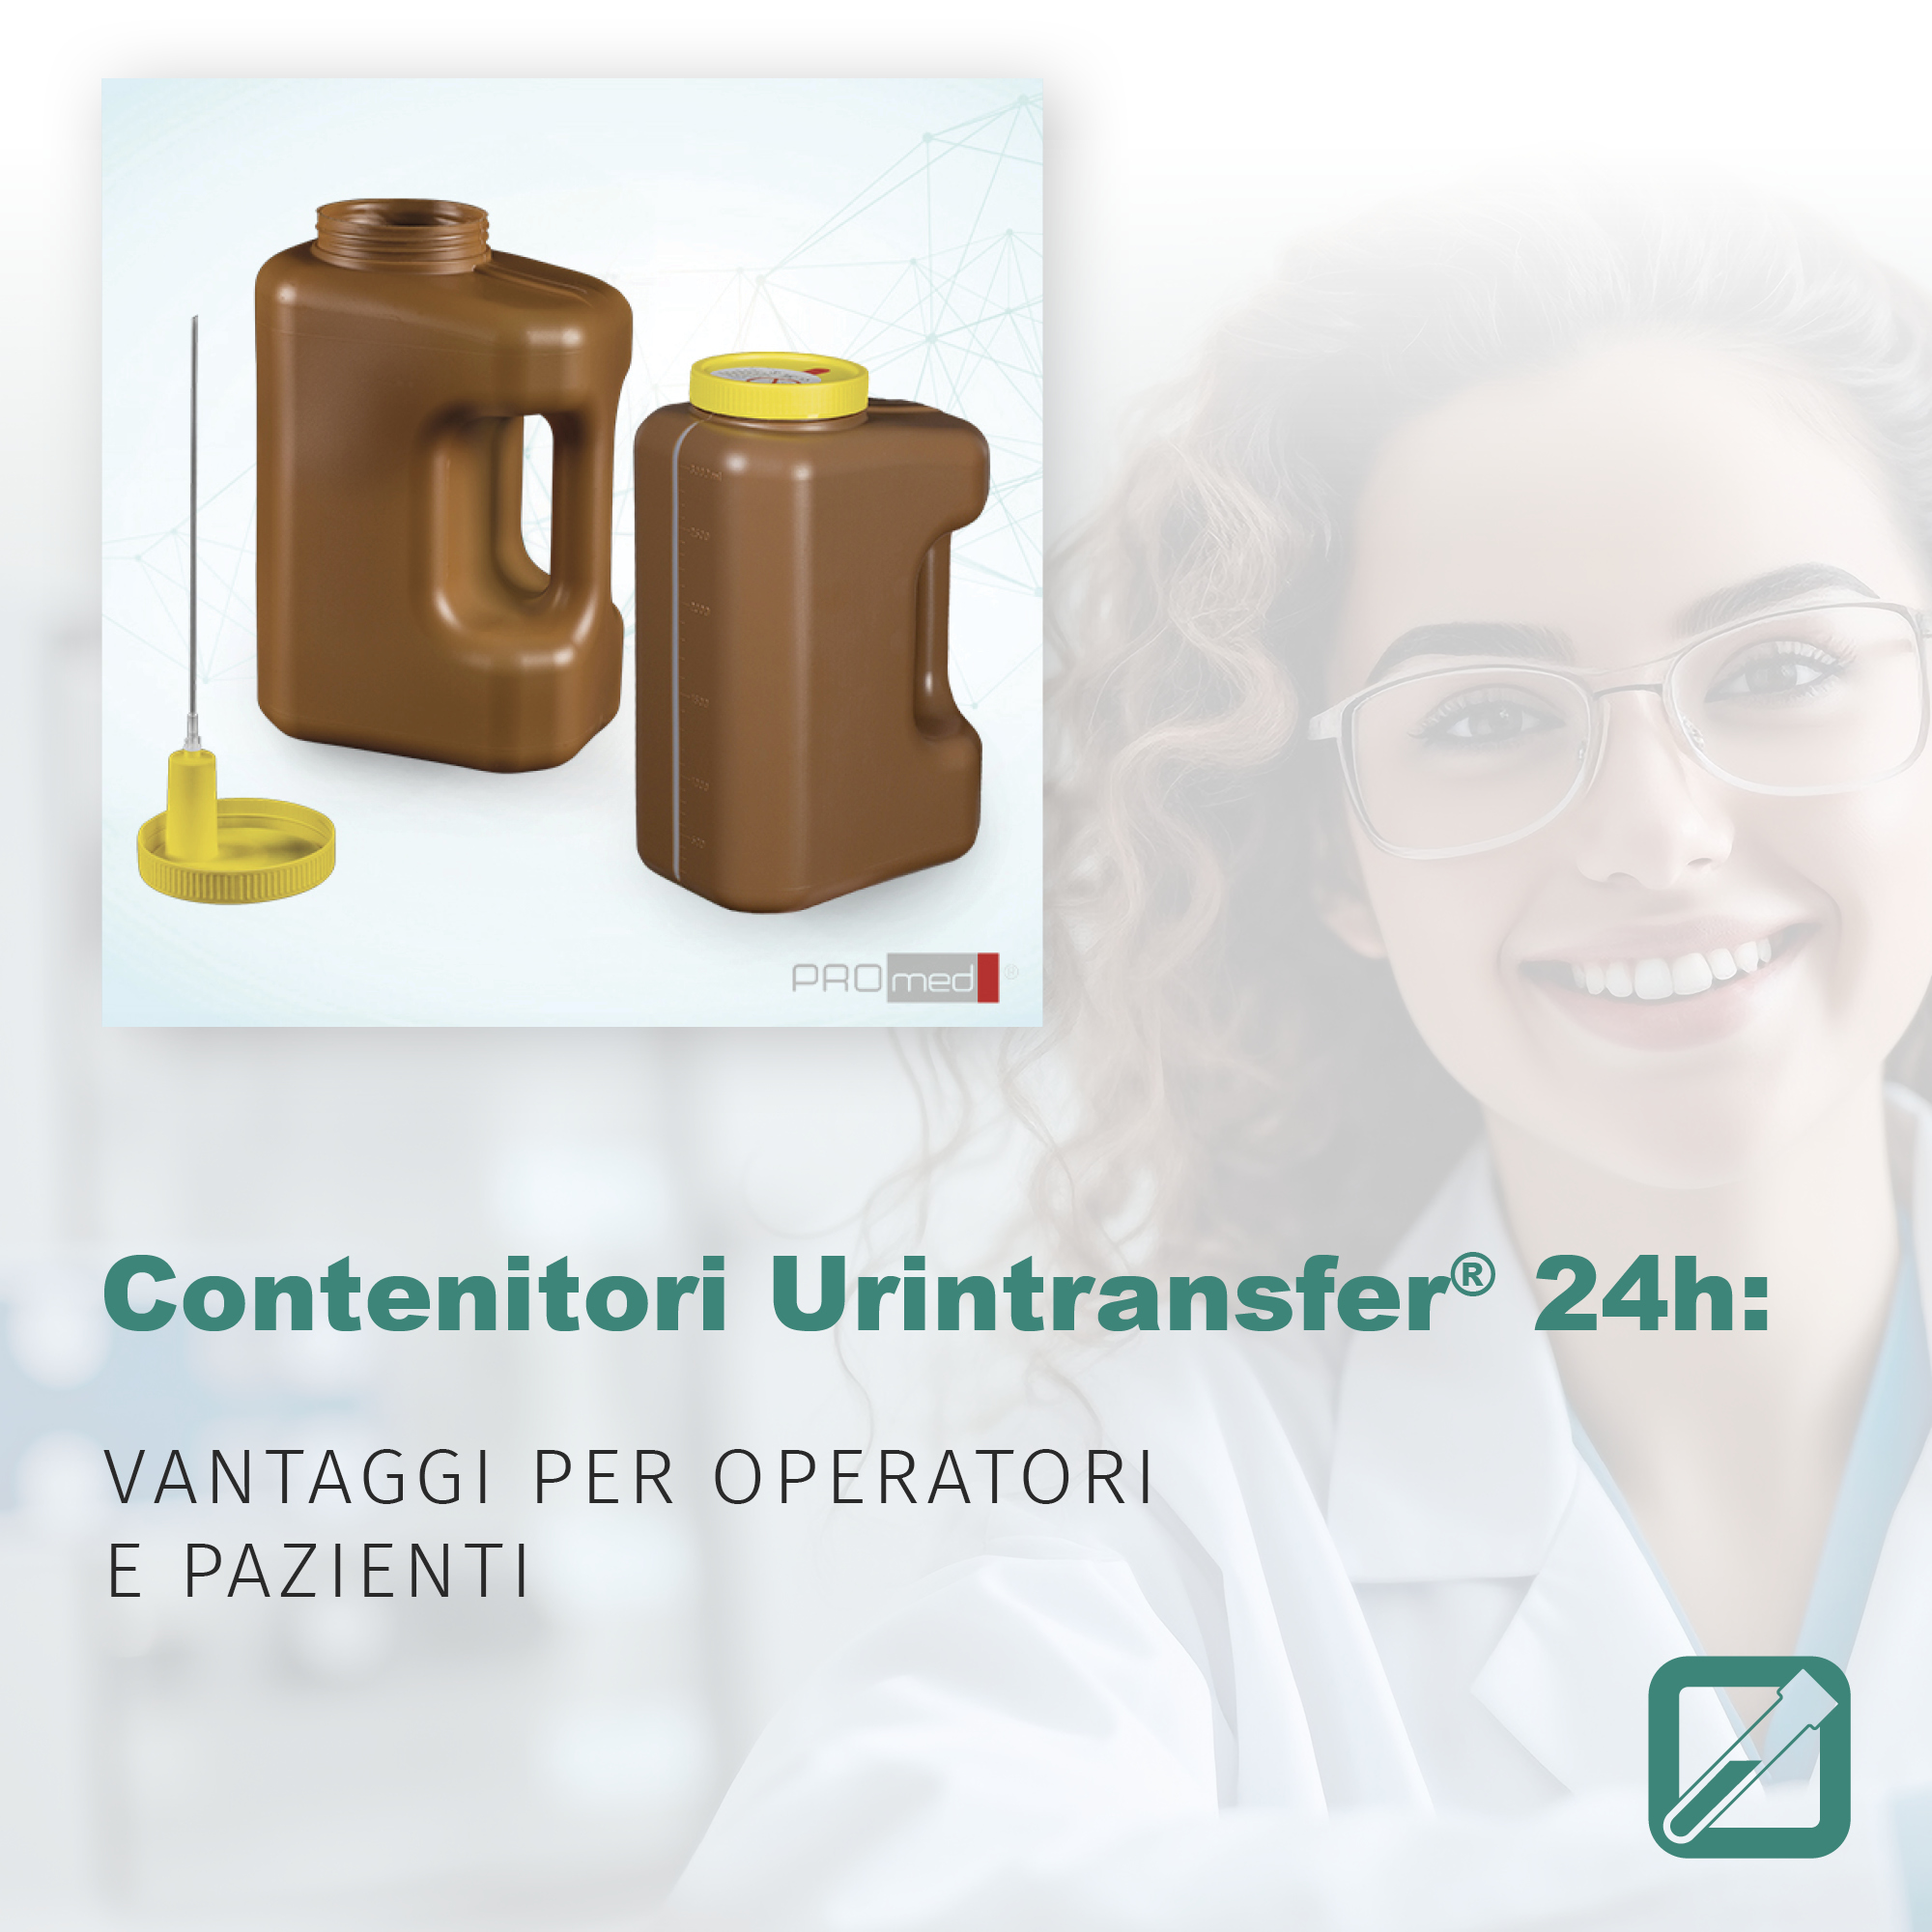 Contenitori Urintransfer® 24h: vantaggi per operatori e pazienti